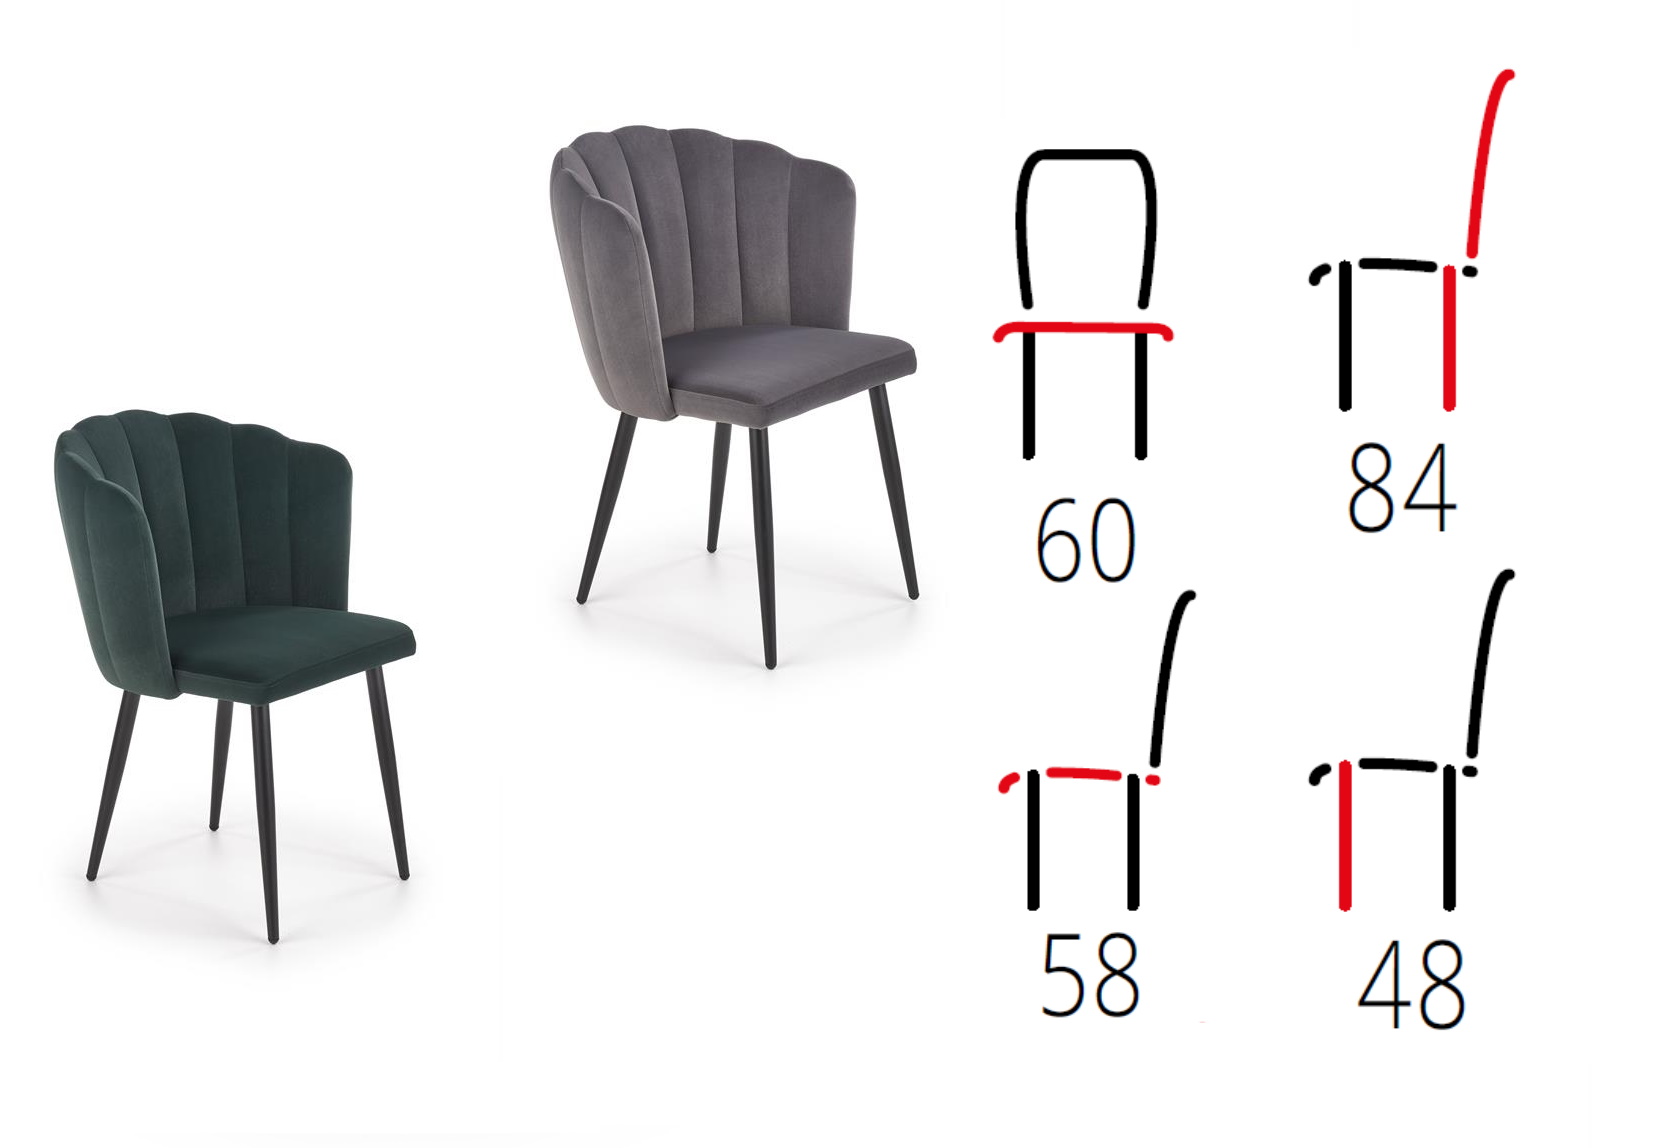 krzesło tapicerowane do salonu Betty, wymiary krzesła